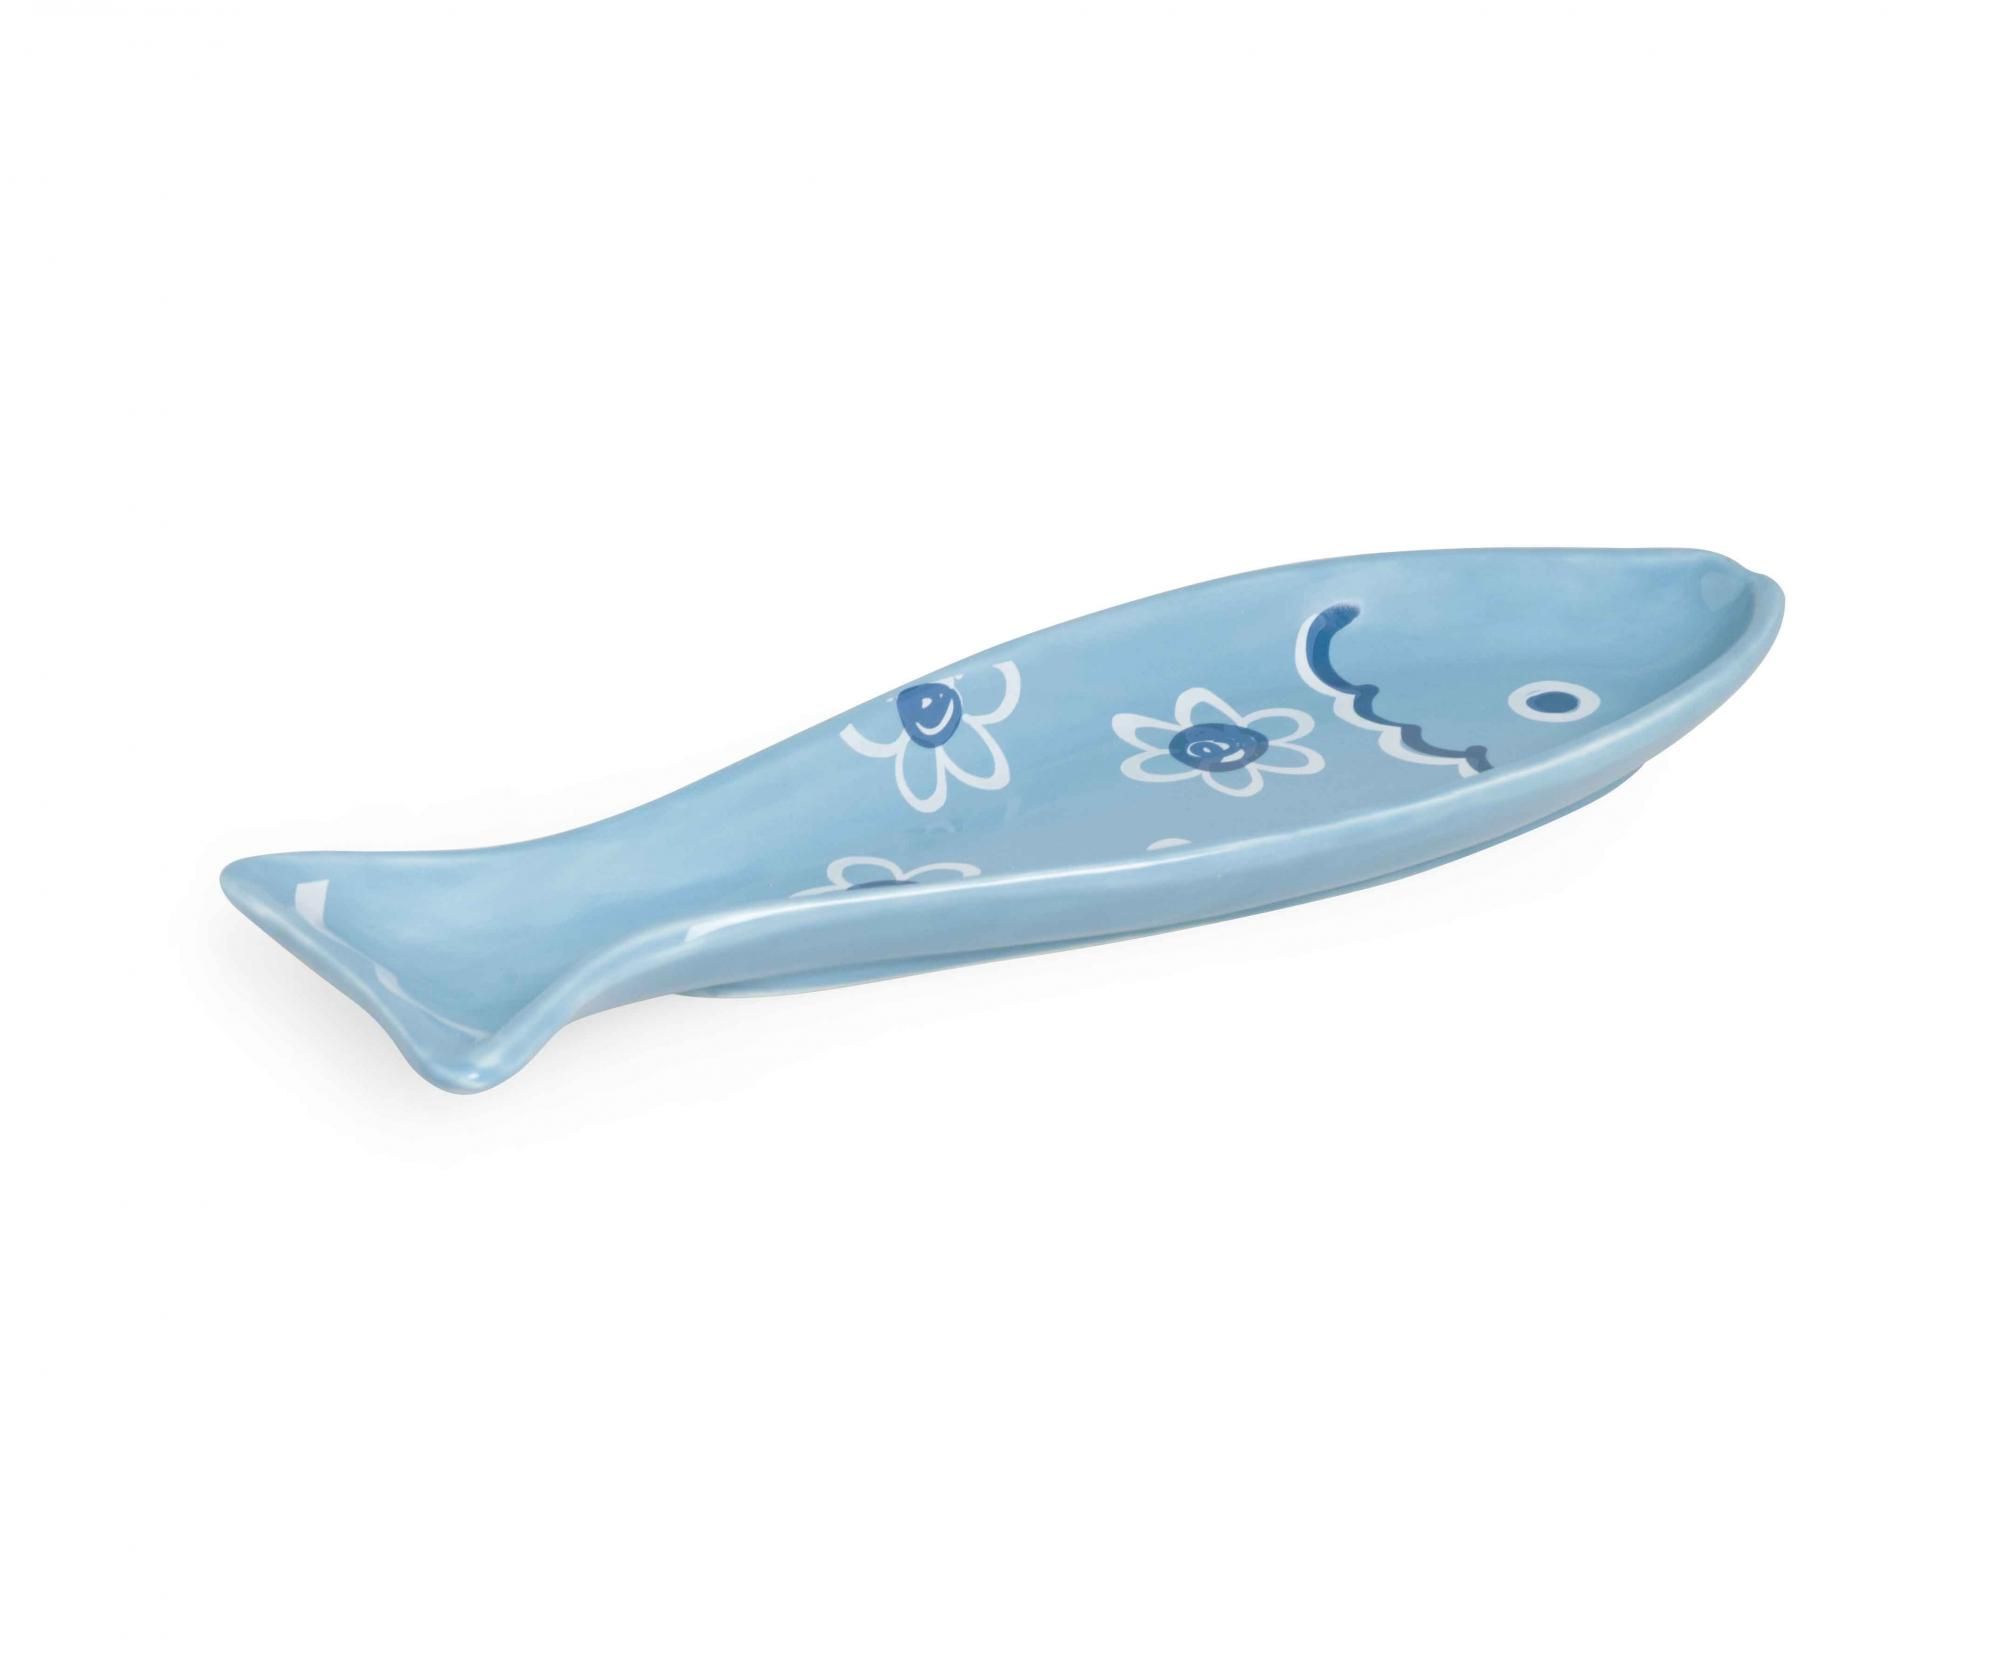 Suport pentru lingura Ocean Fish – Excelsa, Albastru Excelsa